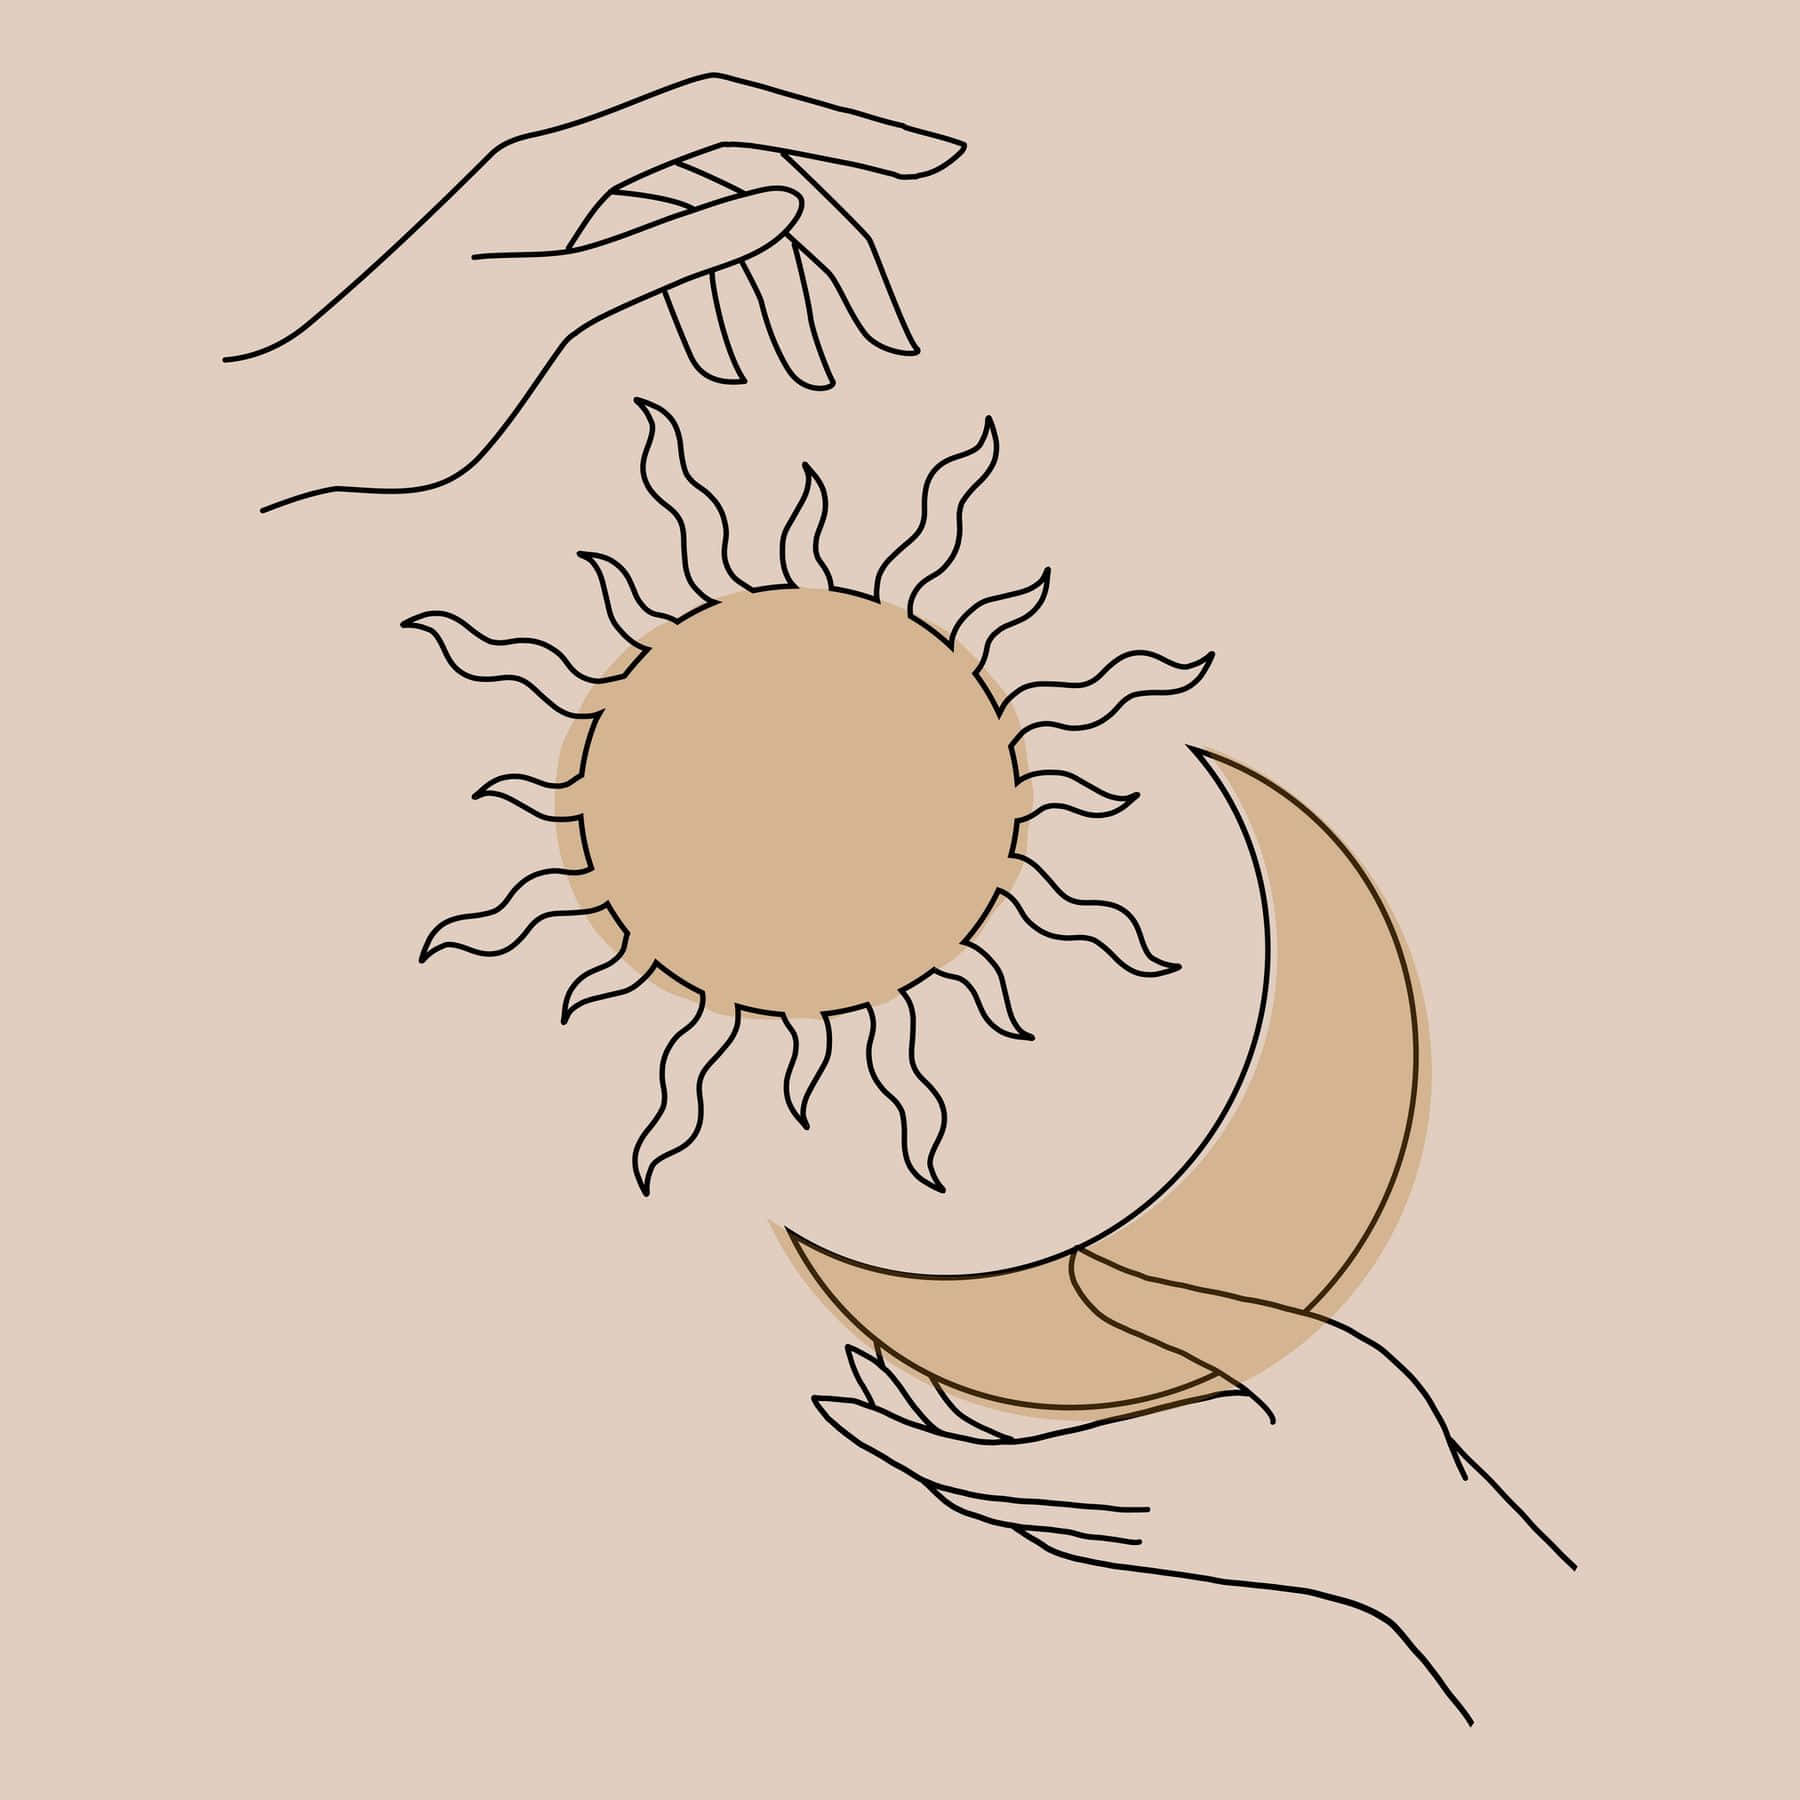 Solen og månen er i hænderne på to personer. Wallpaper